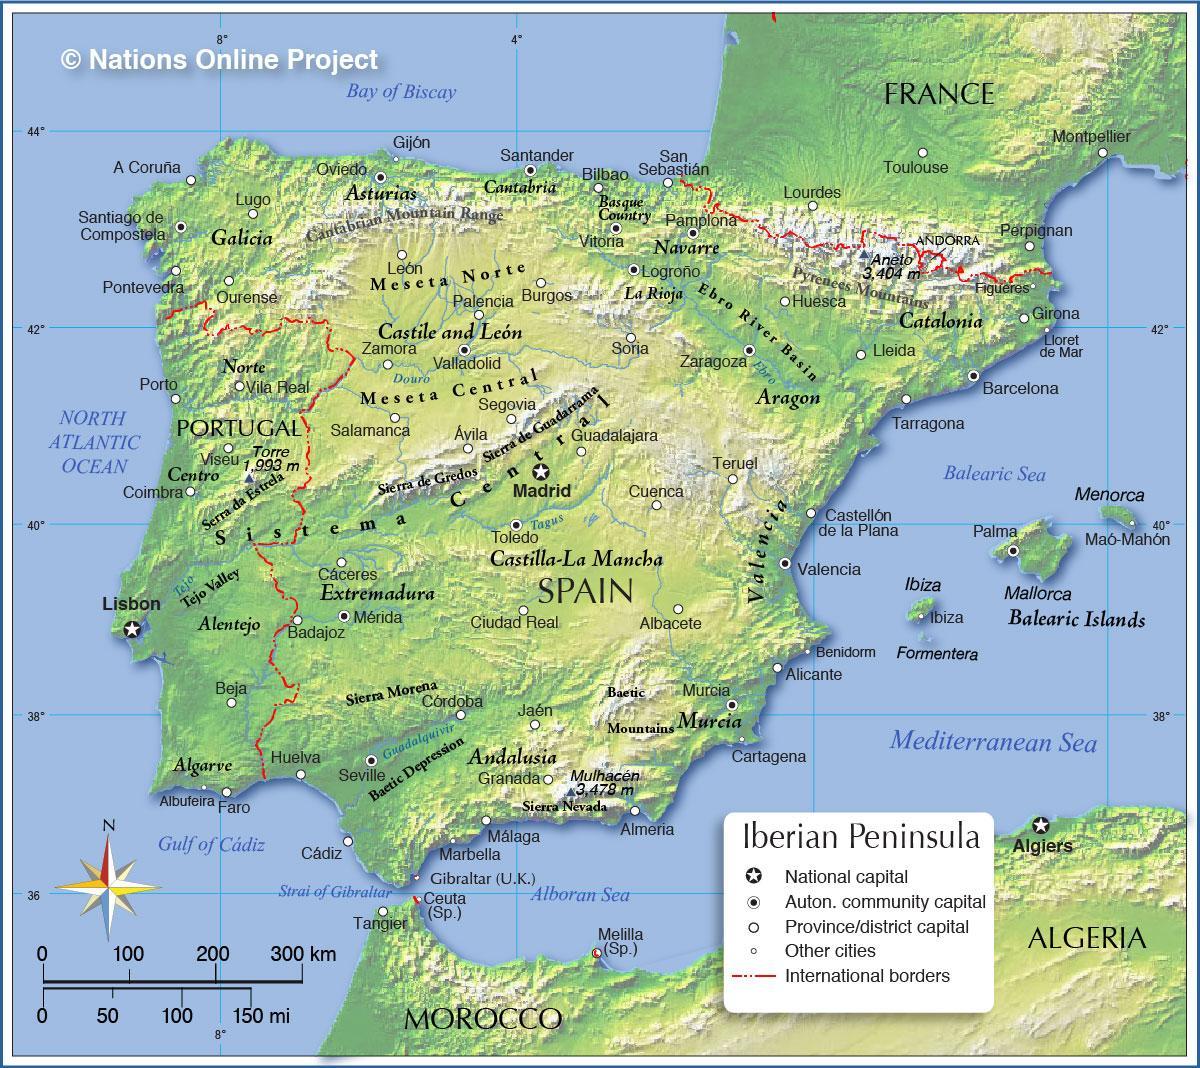 Mappa topografica di Spagna